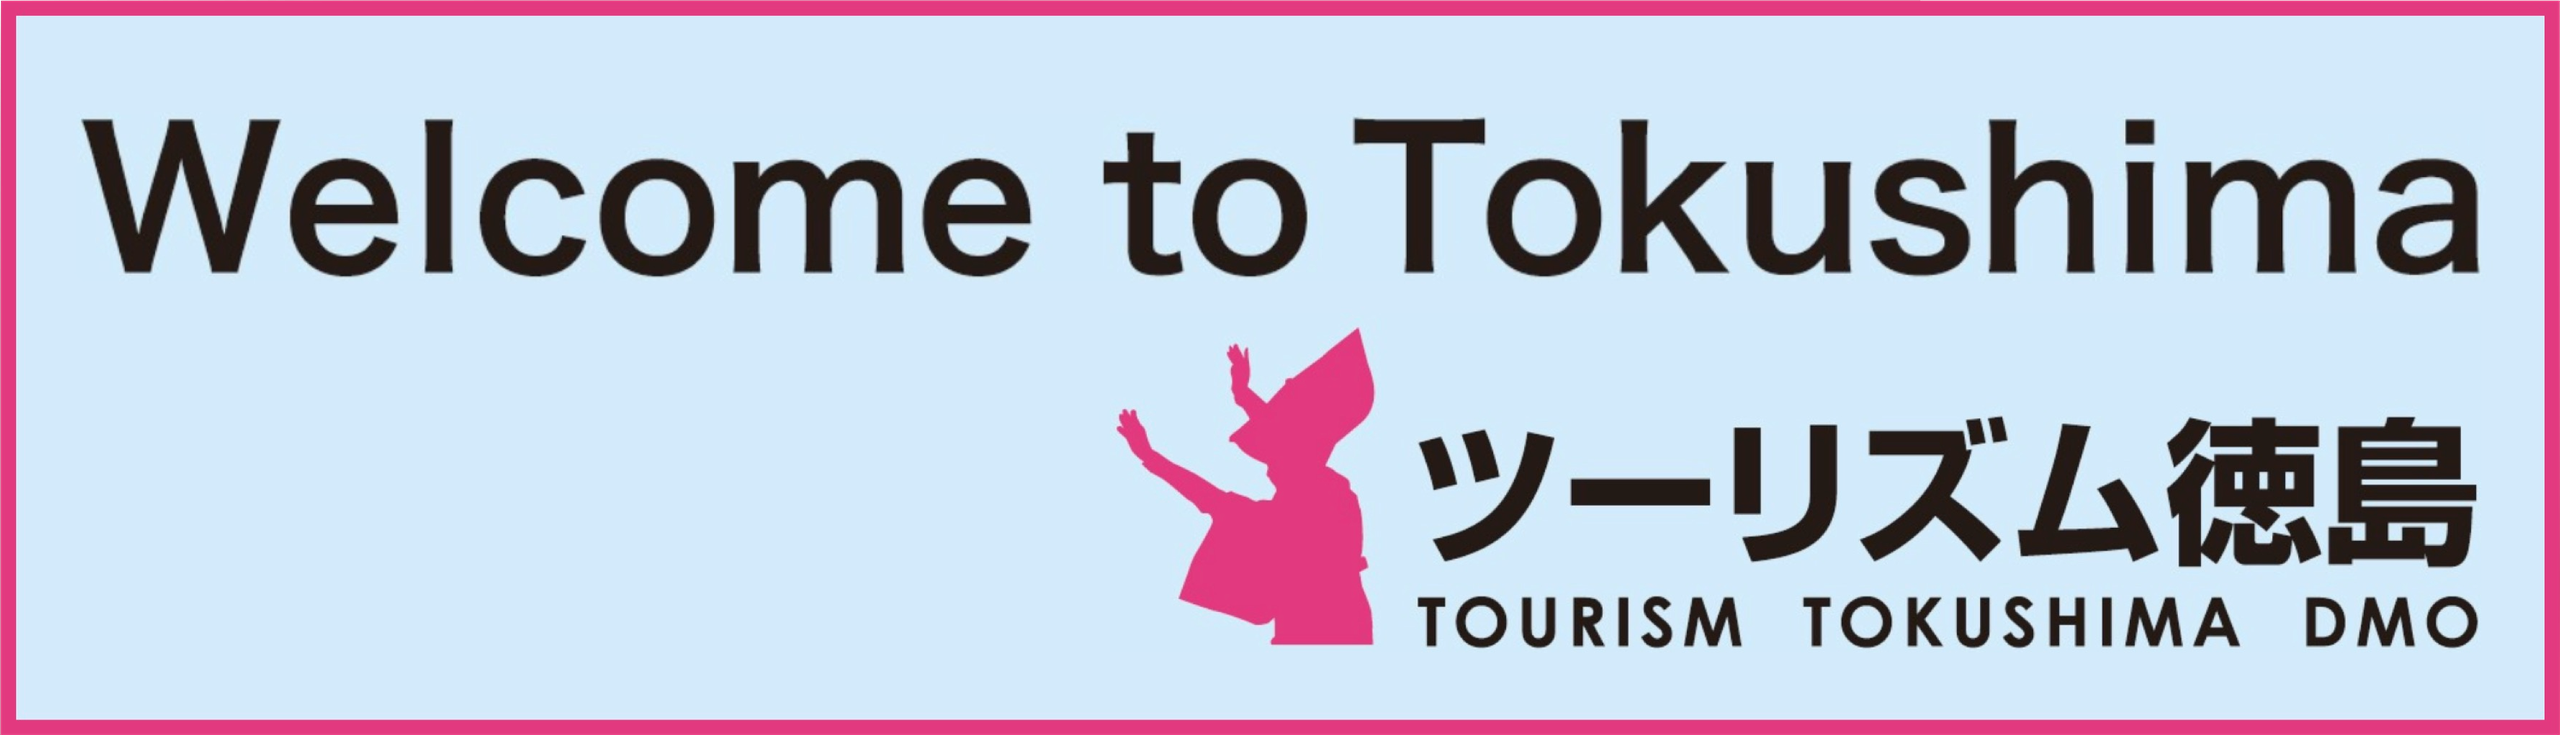 Tokushima Tour